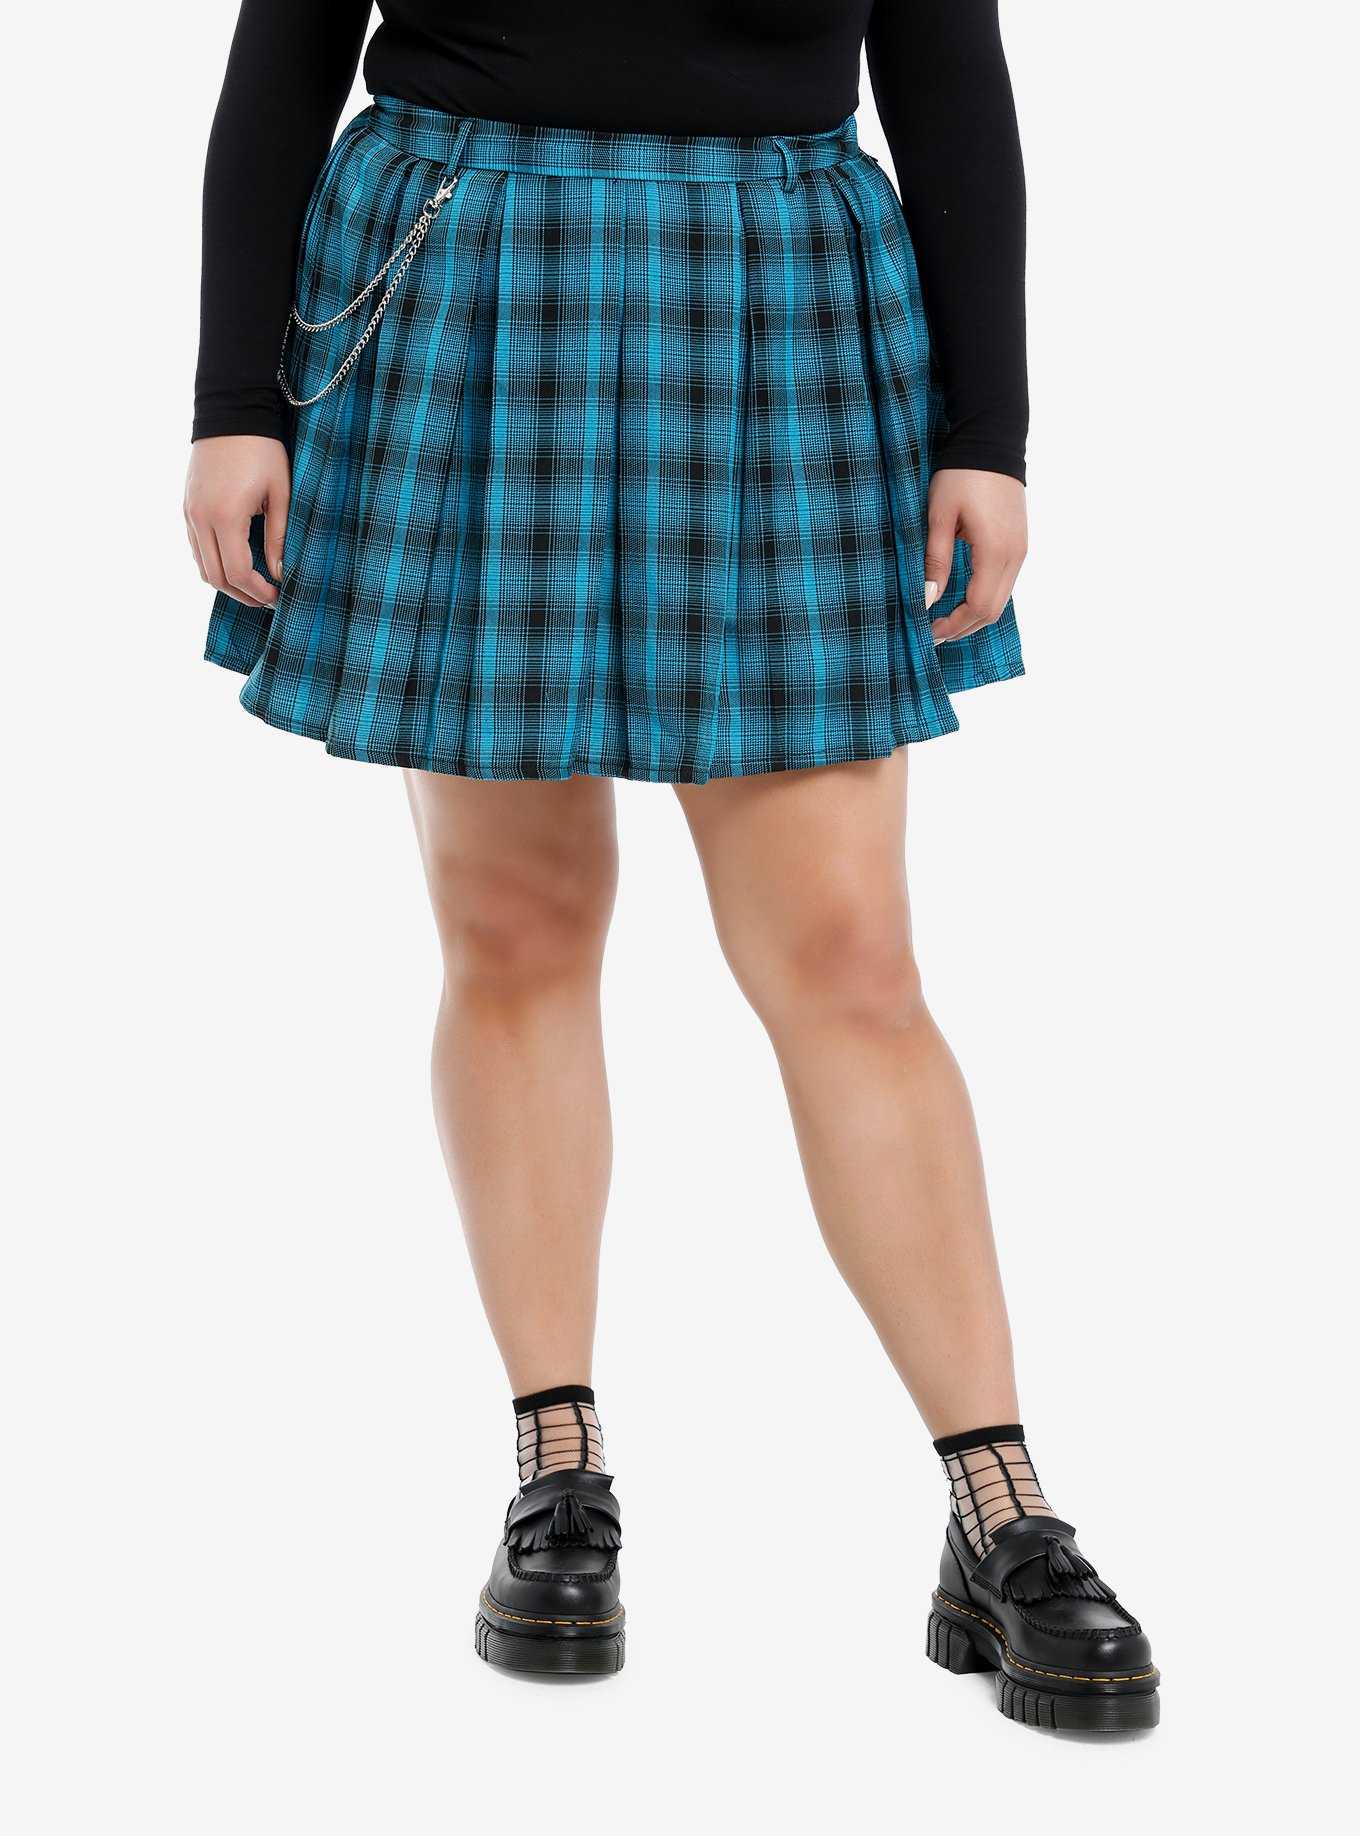 Teal & Black Plaid Pleated Skirt Plus Size, , hi-res